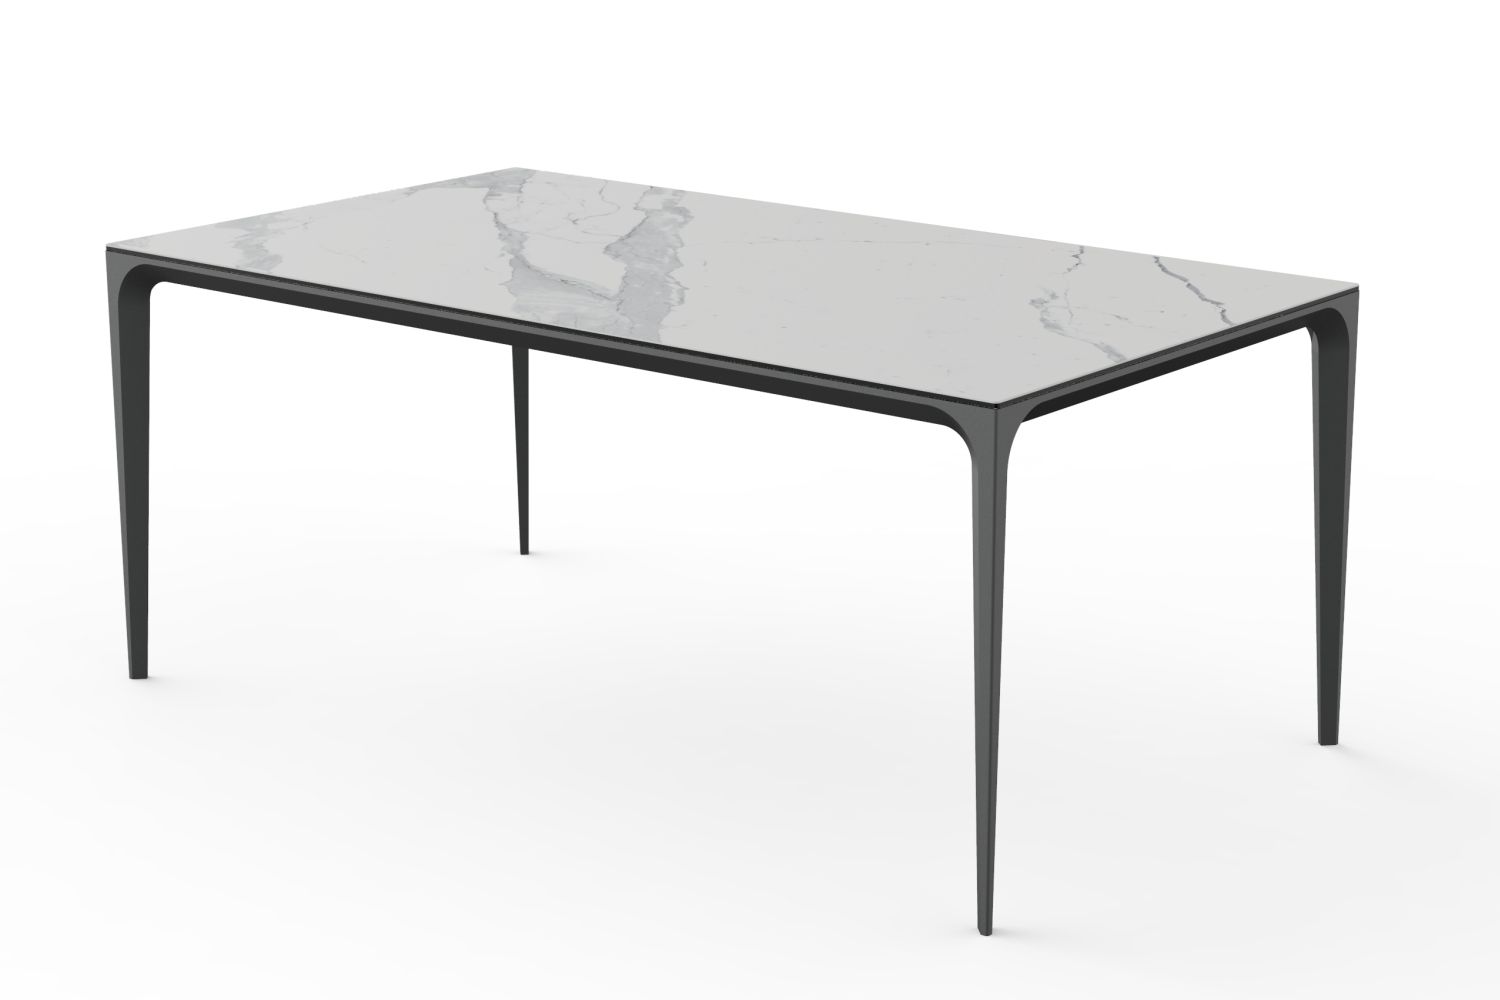 Stół Unico ze spieku kwarcowego Laminam A-4549 180X100 blat biały